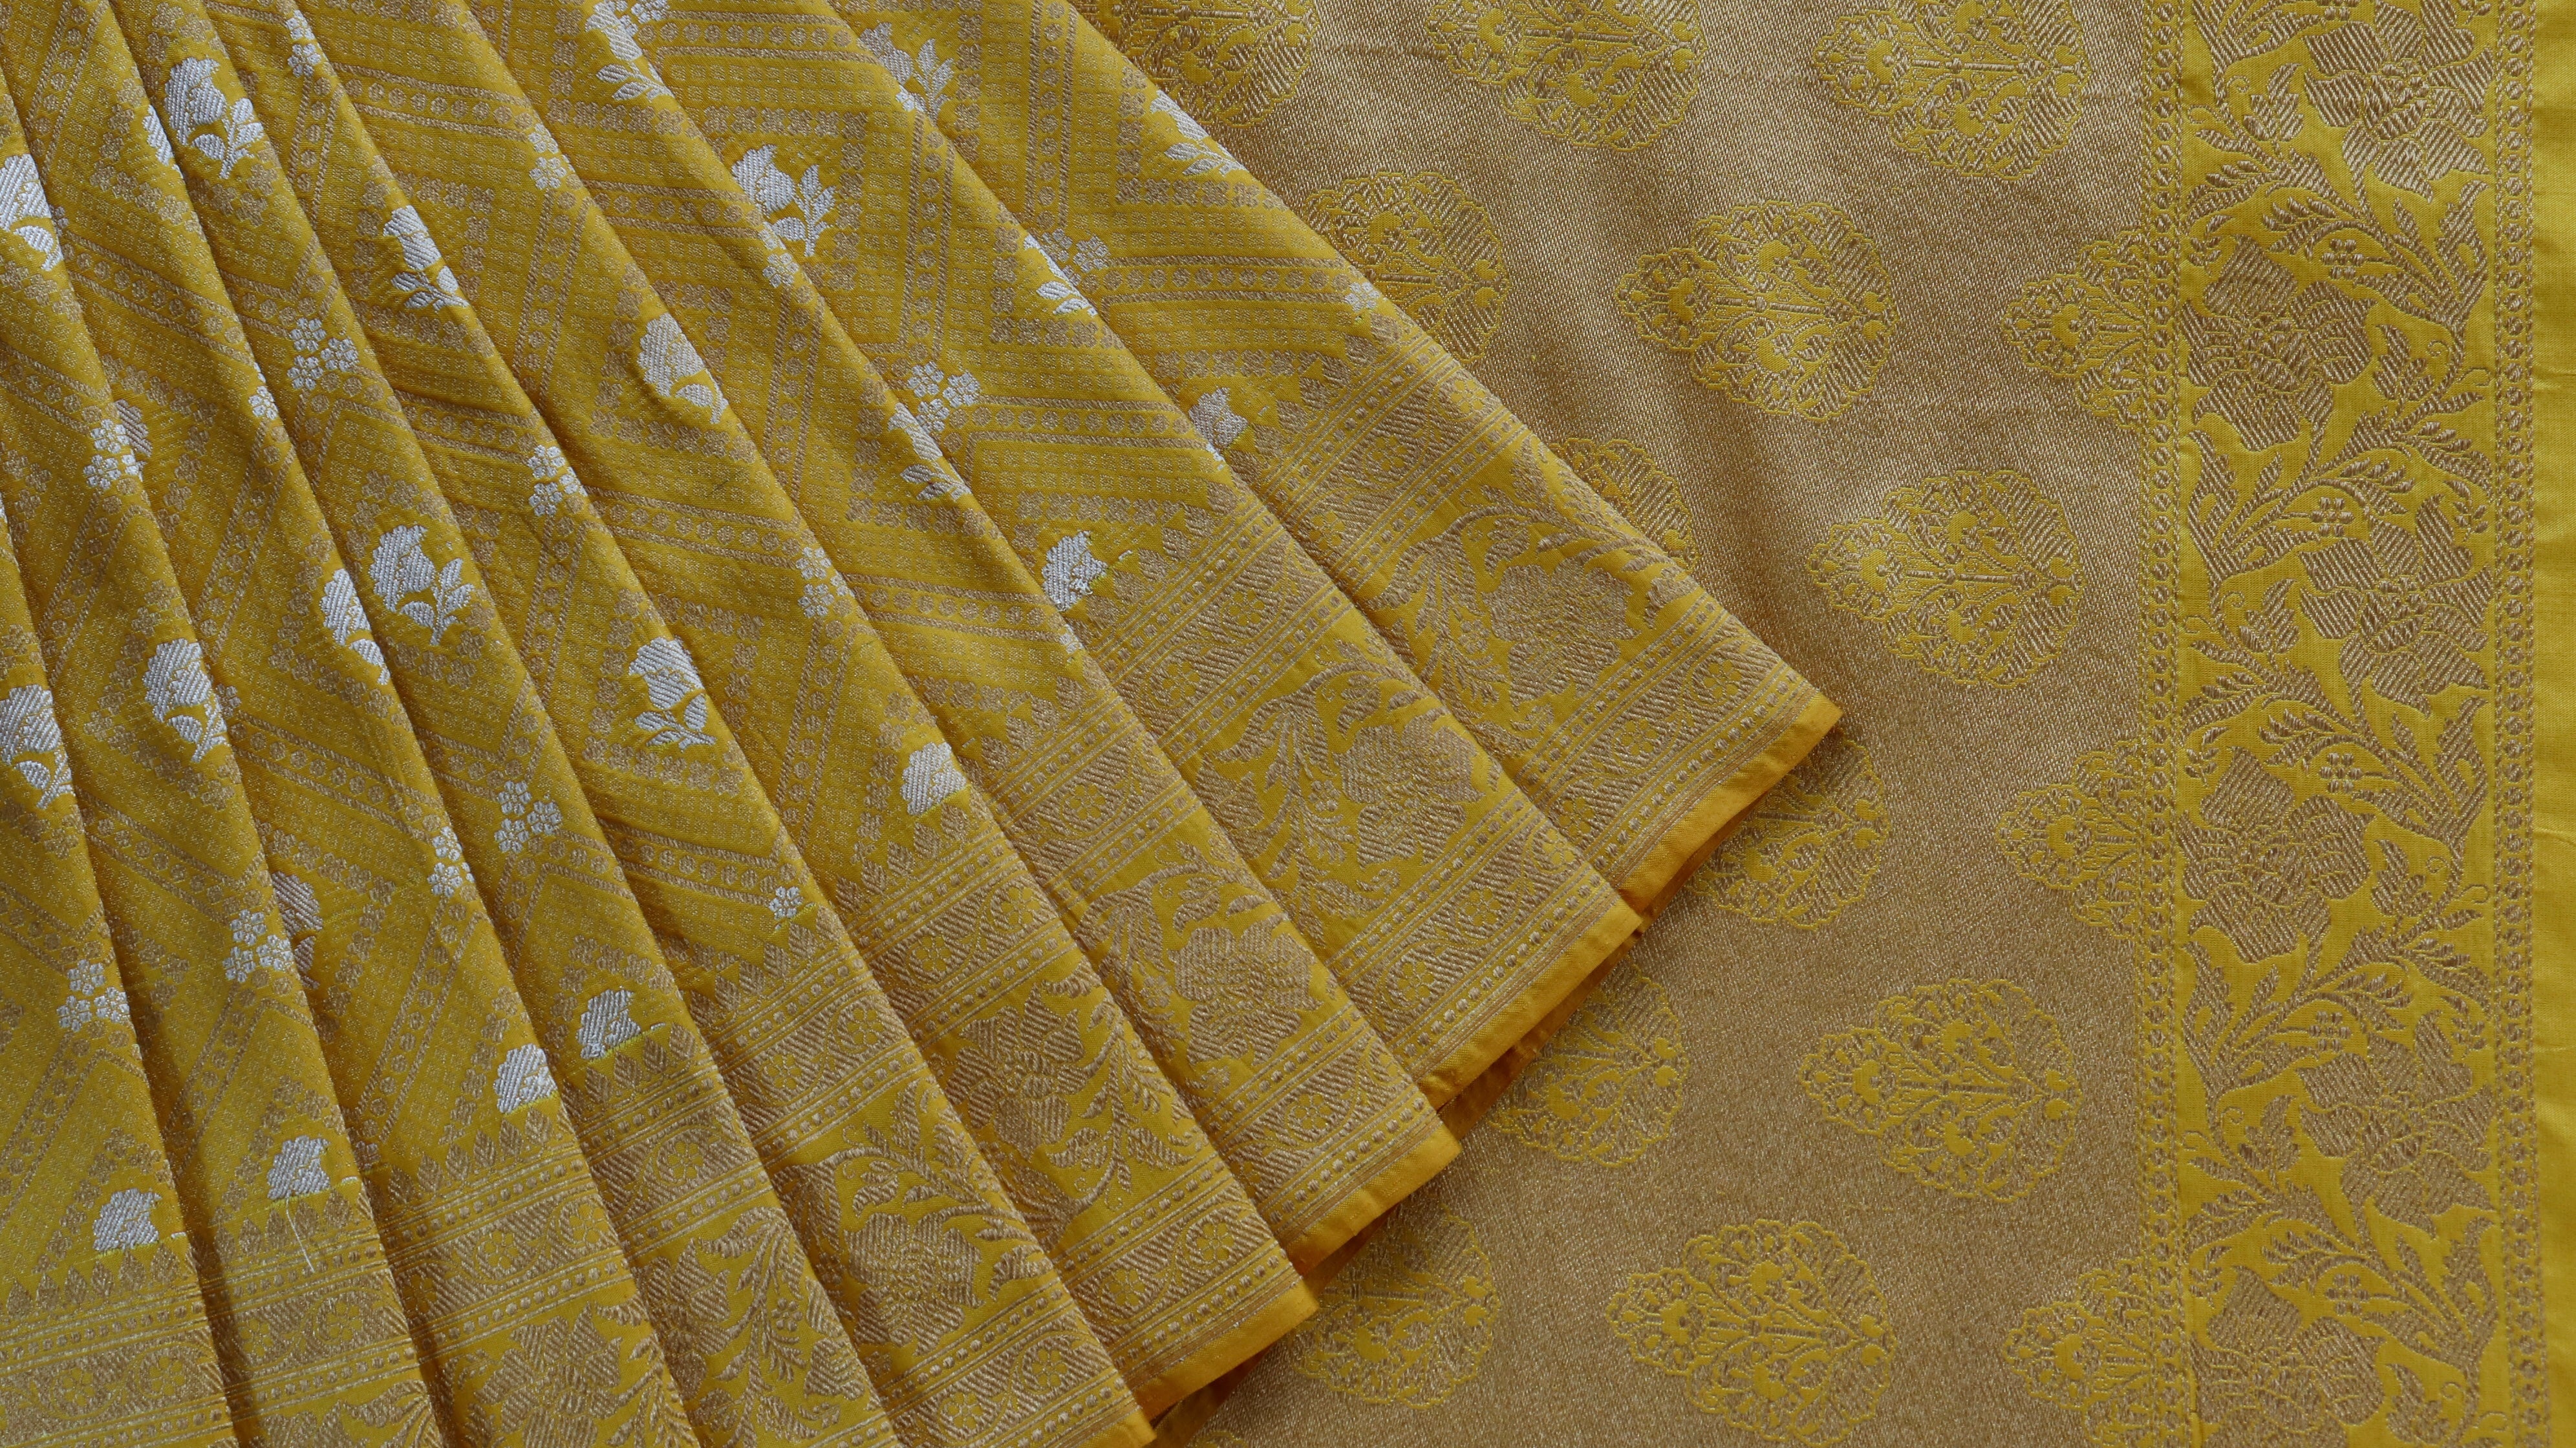 Handloom, Banarasi Handloom Saree, Alfi Saree, Tilfi Saree, Tilfi Saree Banaras, Tilfi, Banarasi Bunkar, Banarasi Bridal Wear, BridalWear, Banarasi Handloom Banarasi Yellow Tanchoi Pure Silk Handloom Banarasi Saree Banarasi Saree